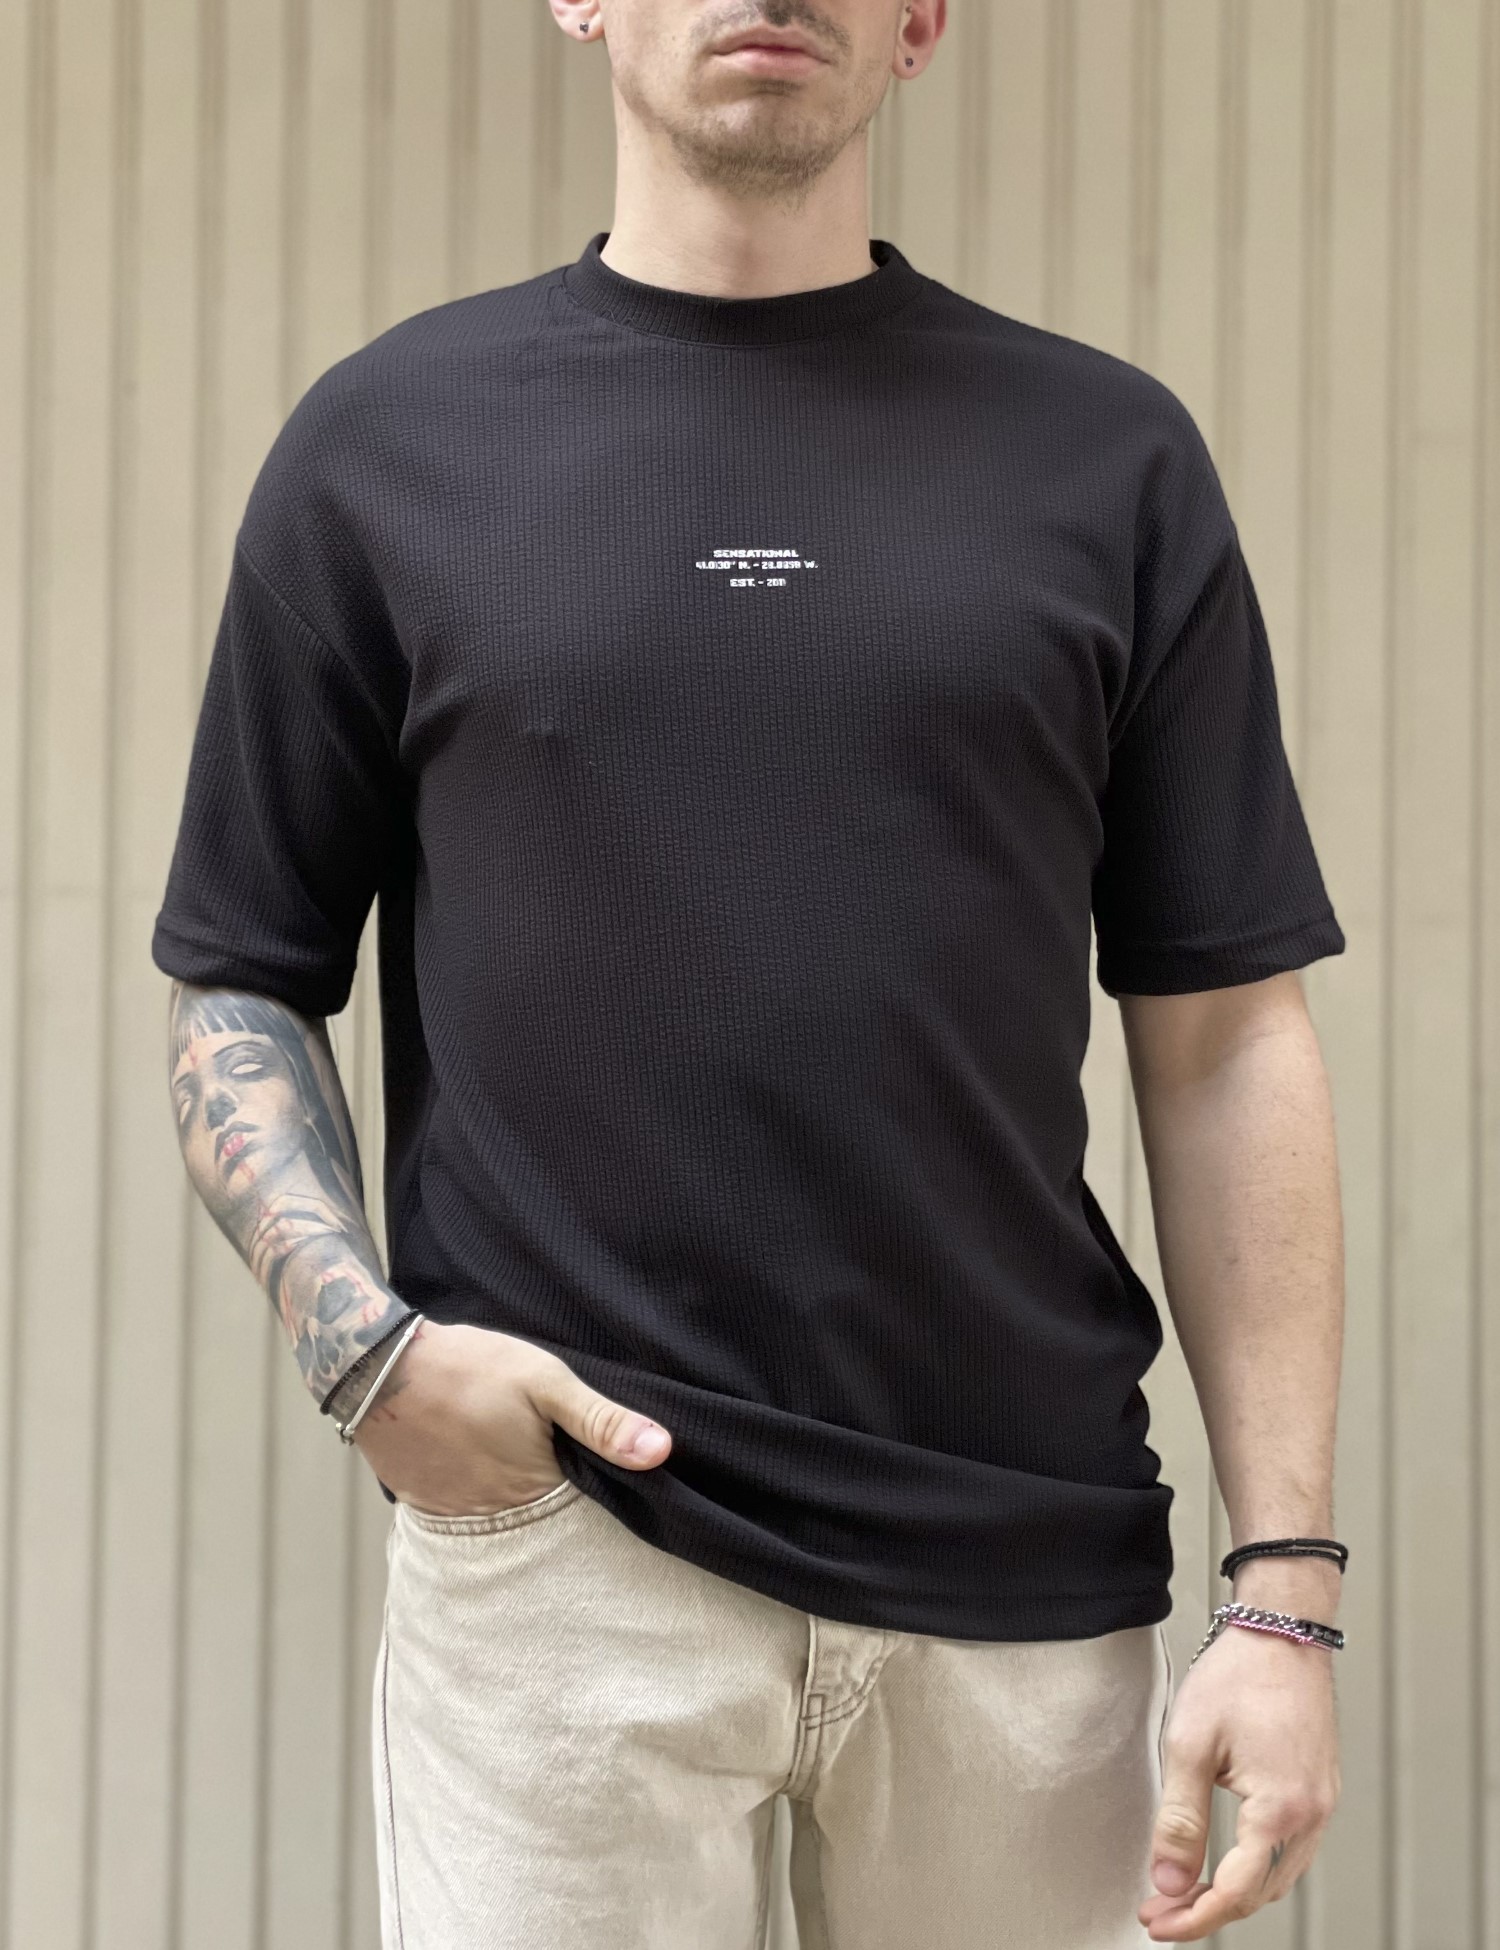 ΑΝΔΡΑΣ > ΑΝΔΡΙΚΑ ΡΟΥΧΑ > ΜΠΛΟΥΖΕΣ > T-Shirt Ανδρική μαύρη κοντομάνικη Oversized μπλούζα με λογότυπο TST1674